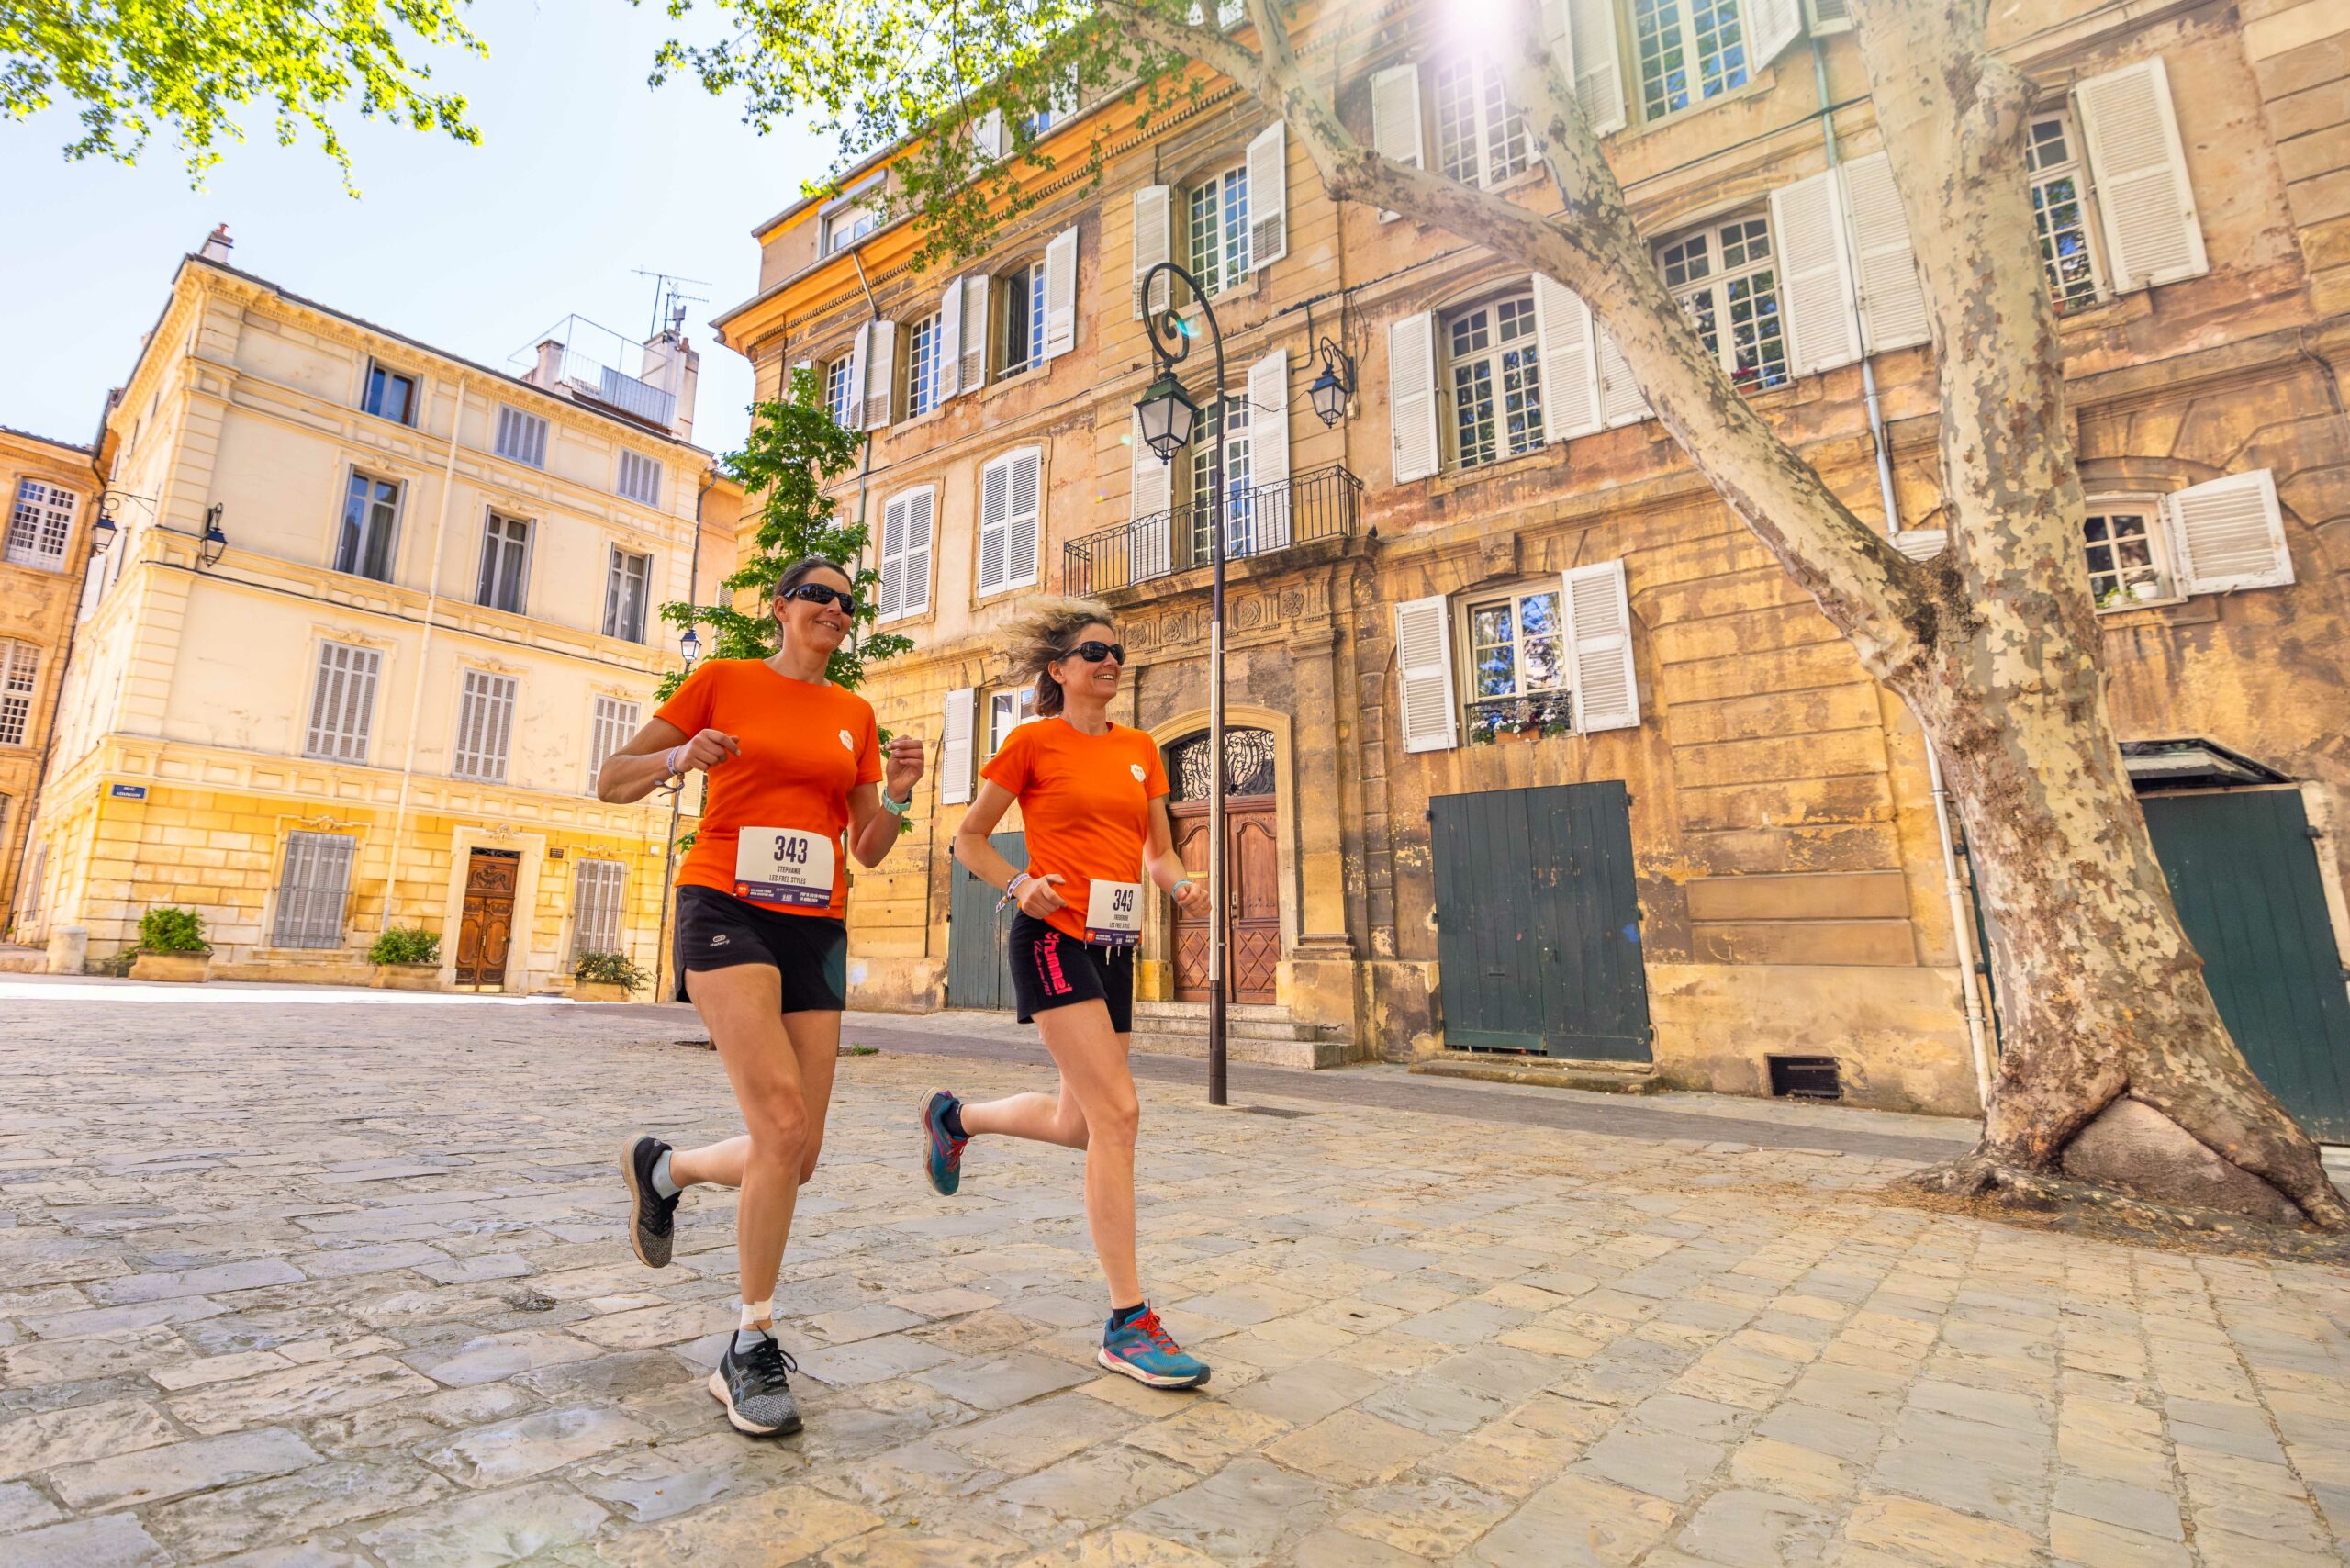 Popeuses qui courent dans les rues d'Aix-en-Provence lors de leur week-end dans la ville